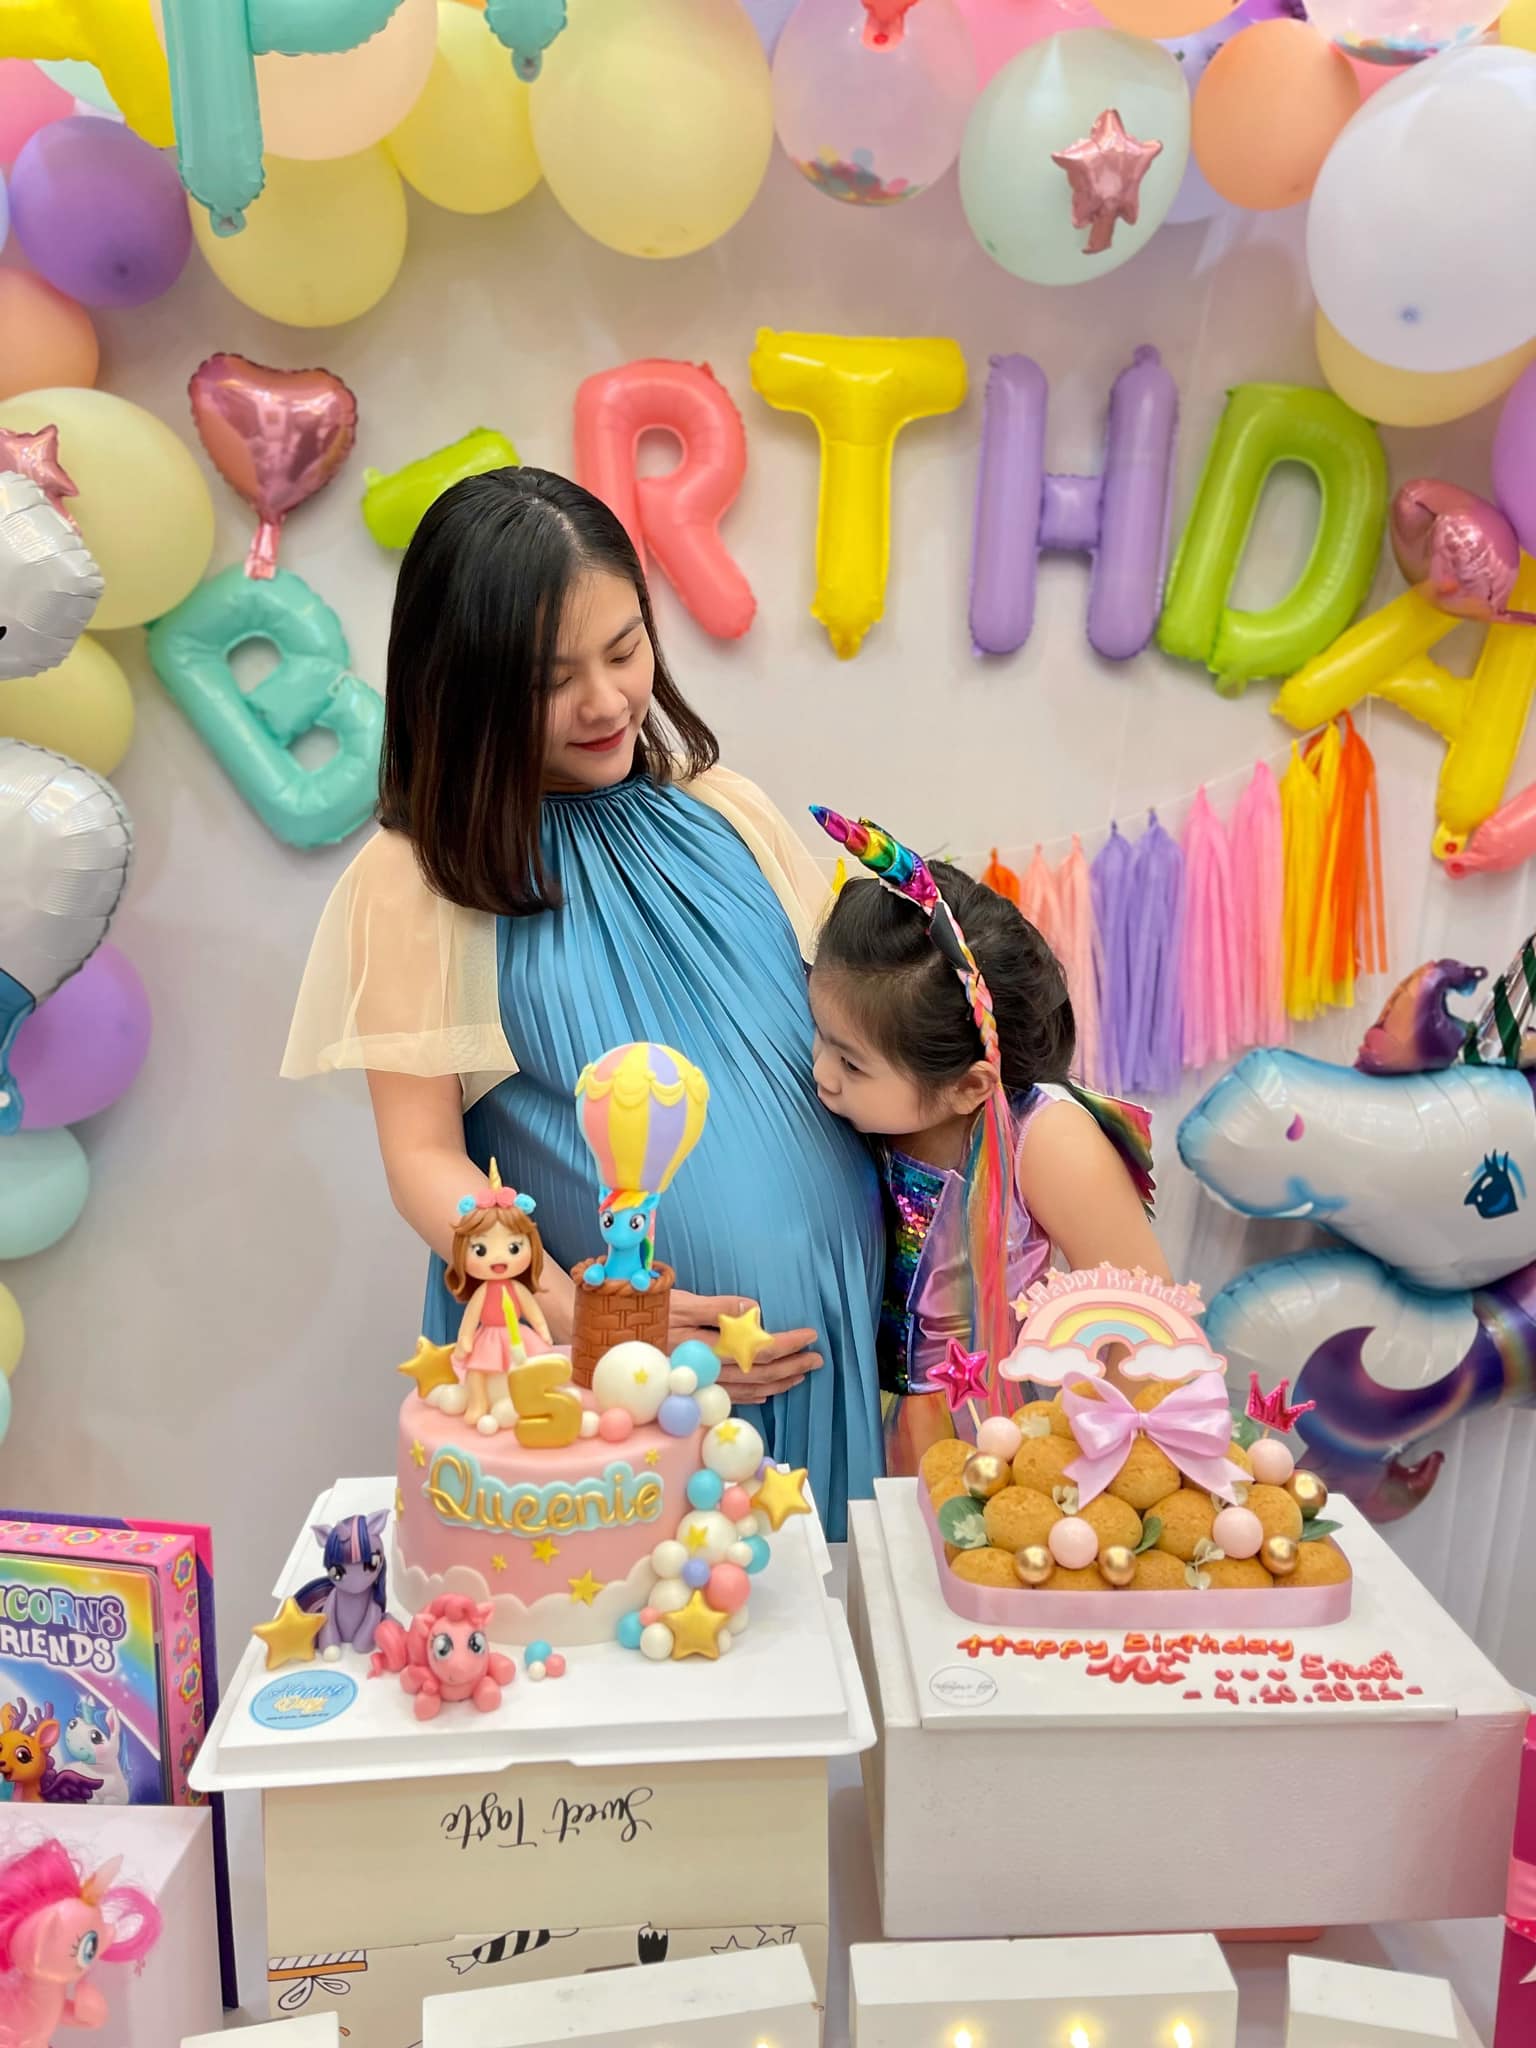 Vợ chồng Vân Trang tổ chức sinh nhật con gái lớn, vóc dáng và nhan sắc mẹ bầu sắp “vỡ chum” giật trọn spotlight! - Ảnh 3.